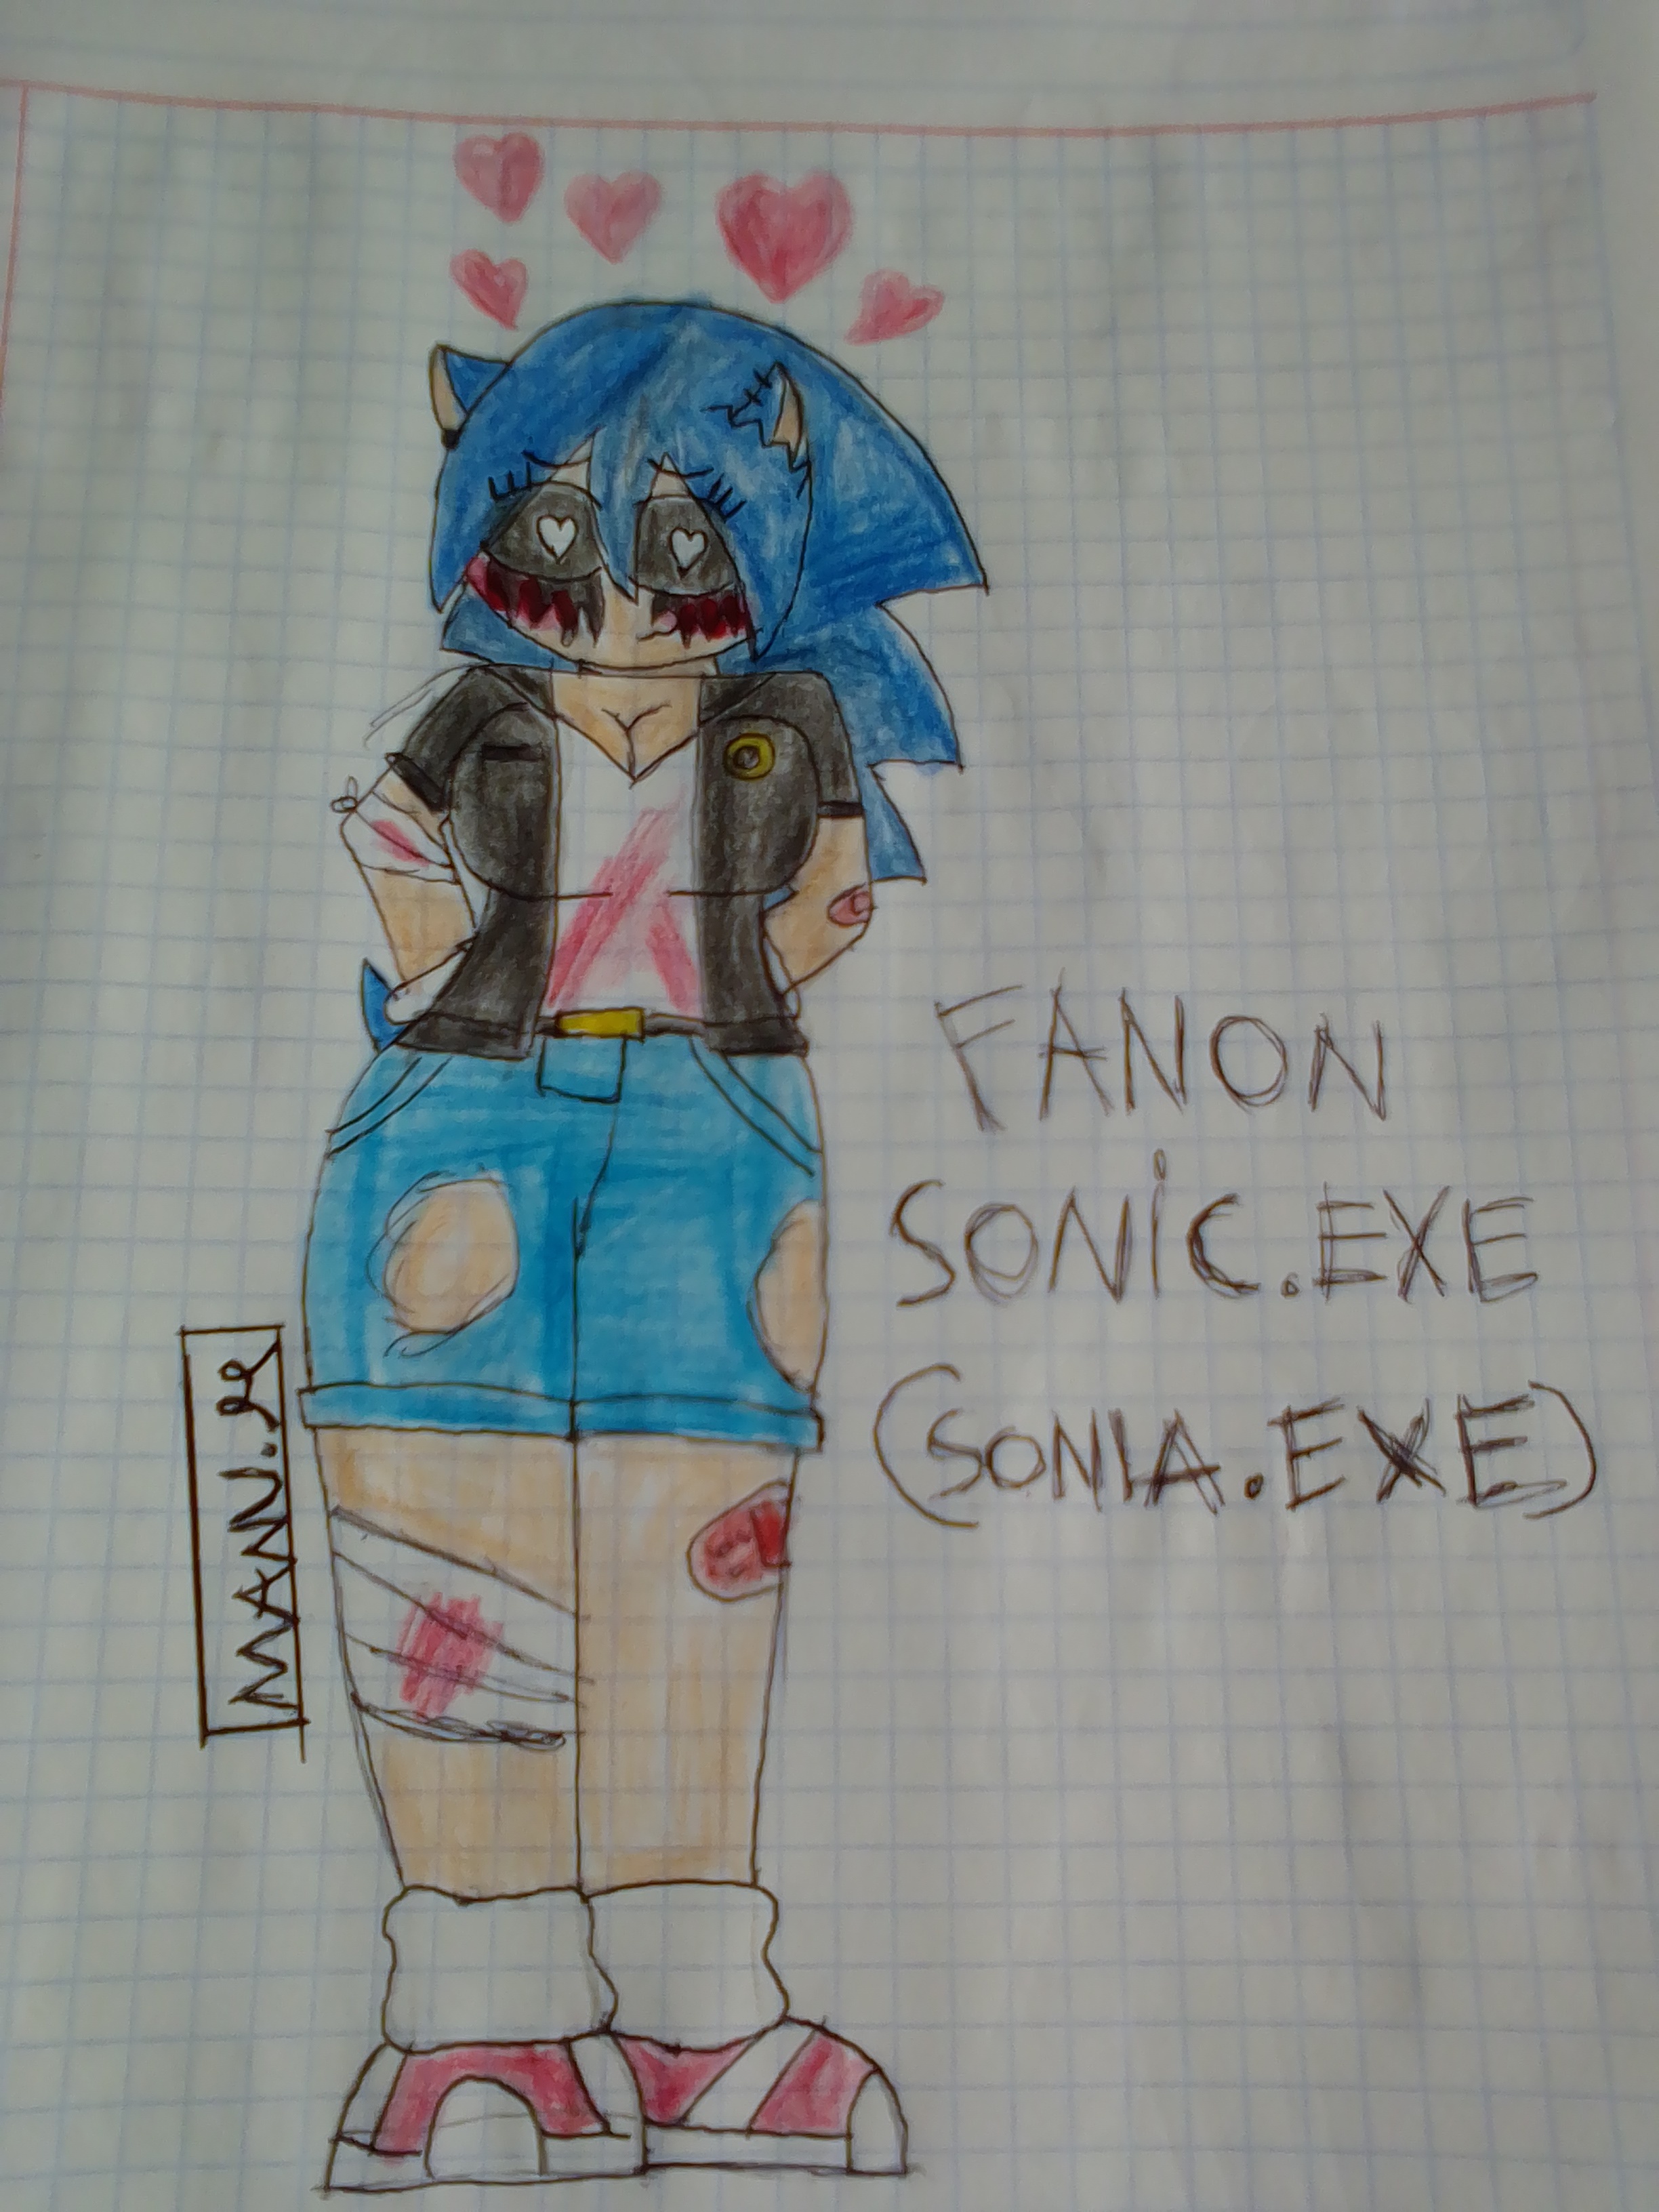 Fanon Sonic.Exe by chuckyg77720 on DeviantArt